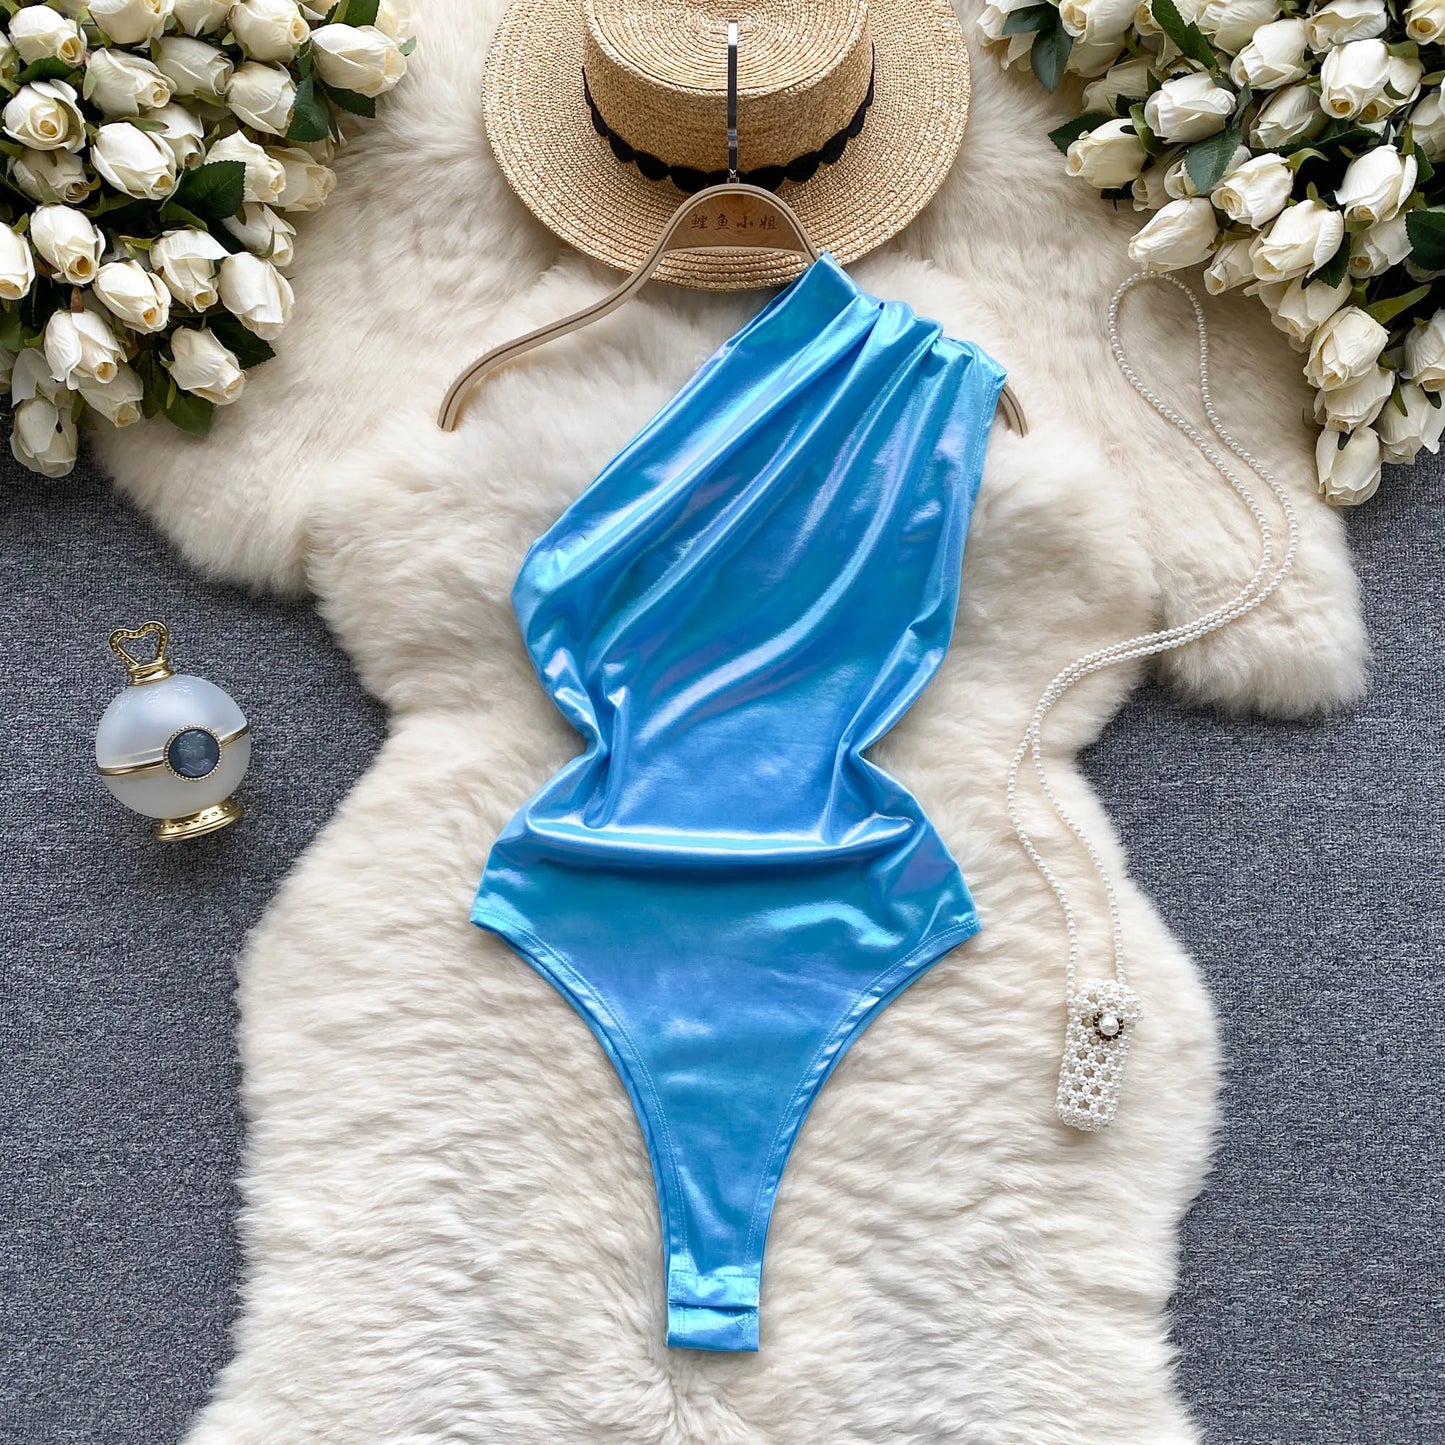 Wanita-body Sexy brillante para verano, Bikini Sensual ajustado con espalda descubierta, ropa de calle de moda, monos de playa lisos